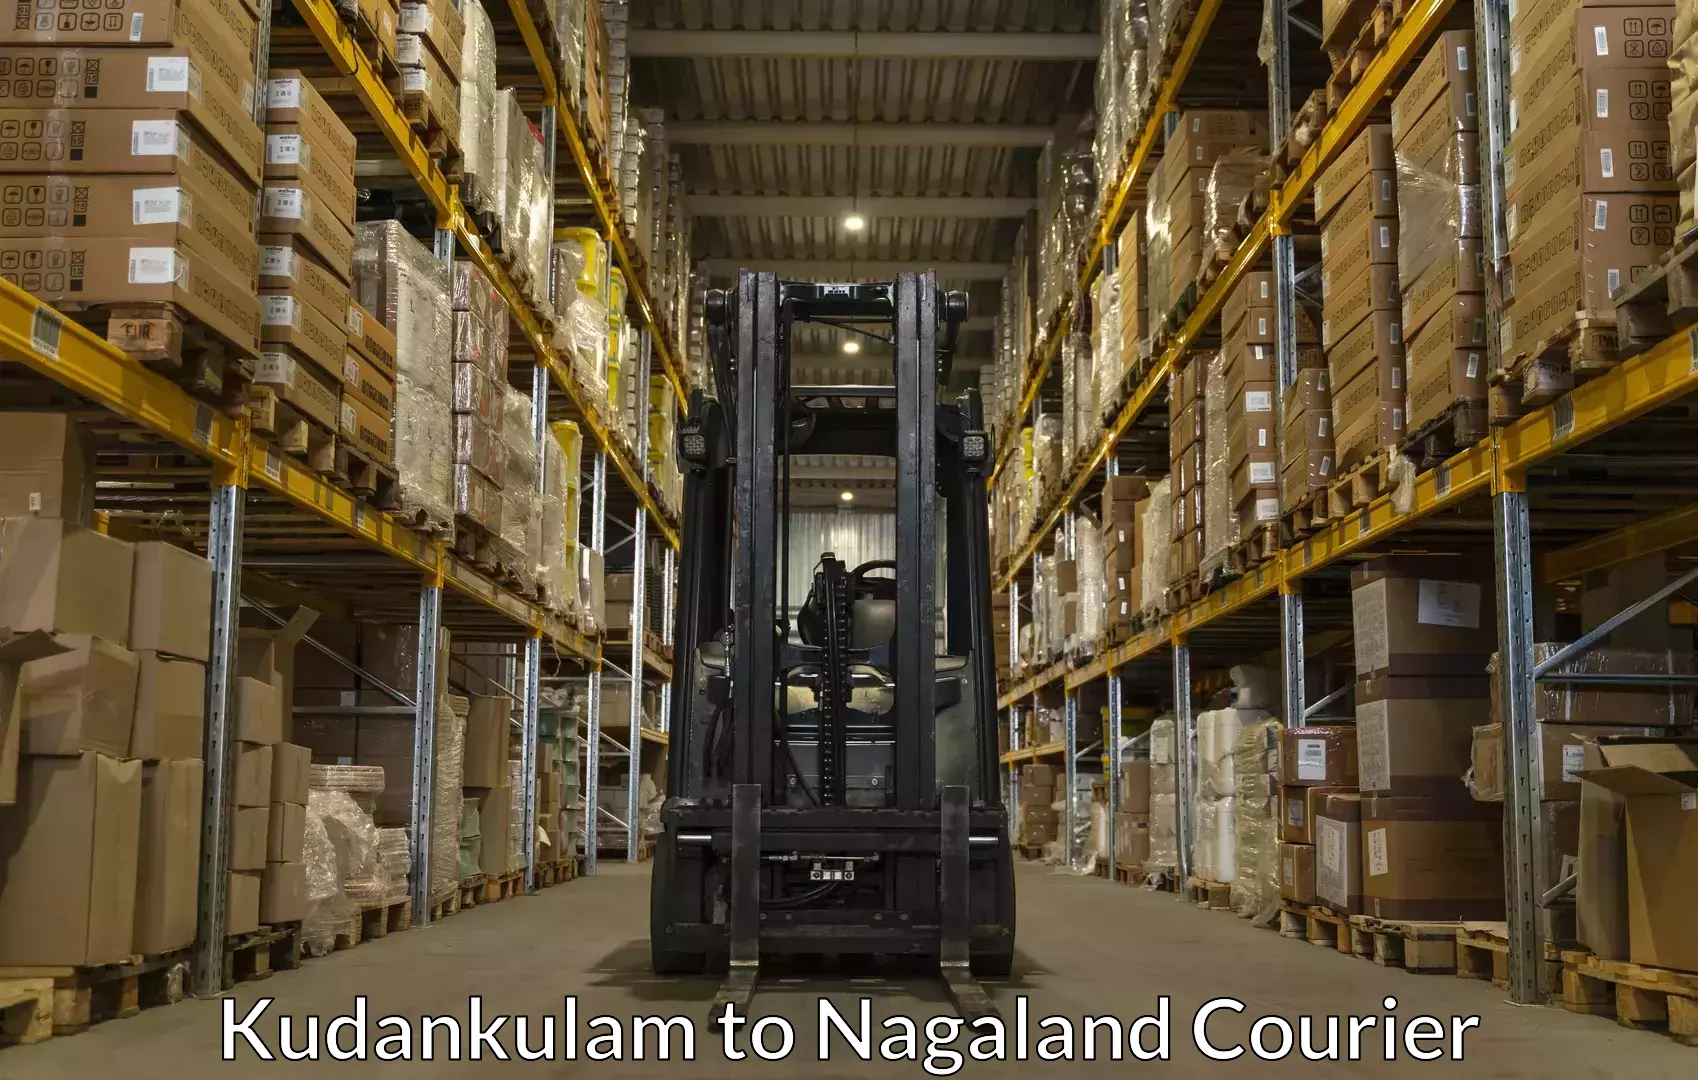 Luggage delivery system Kudankulam to Nagaland